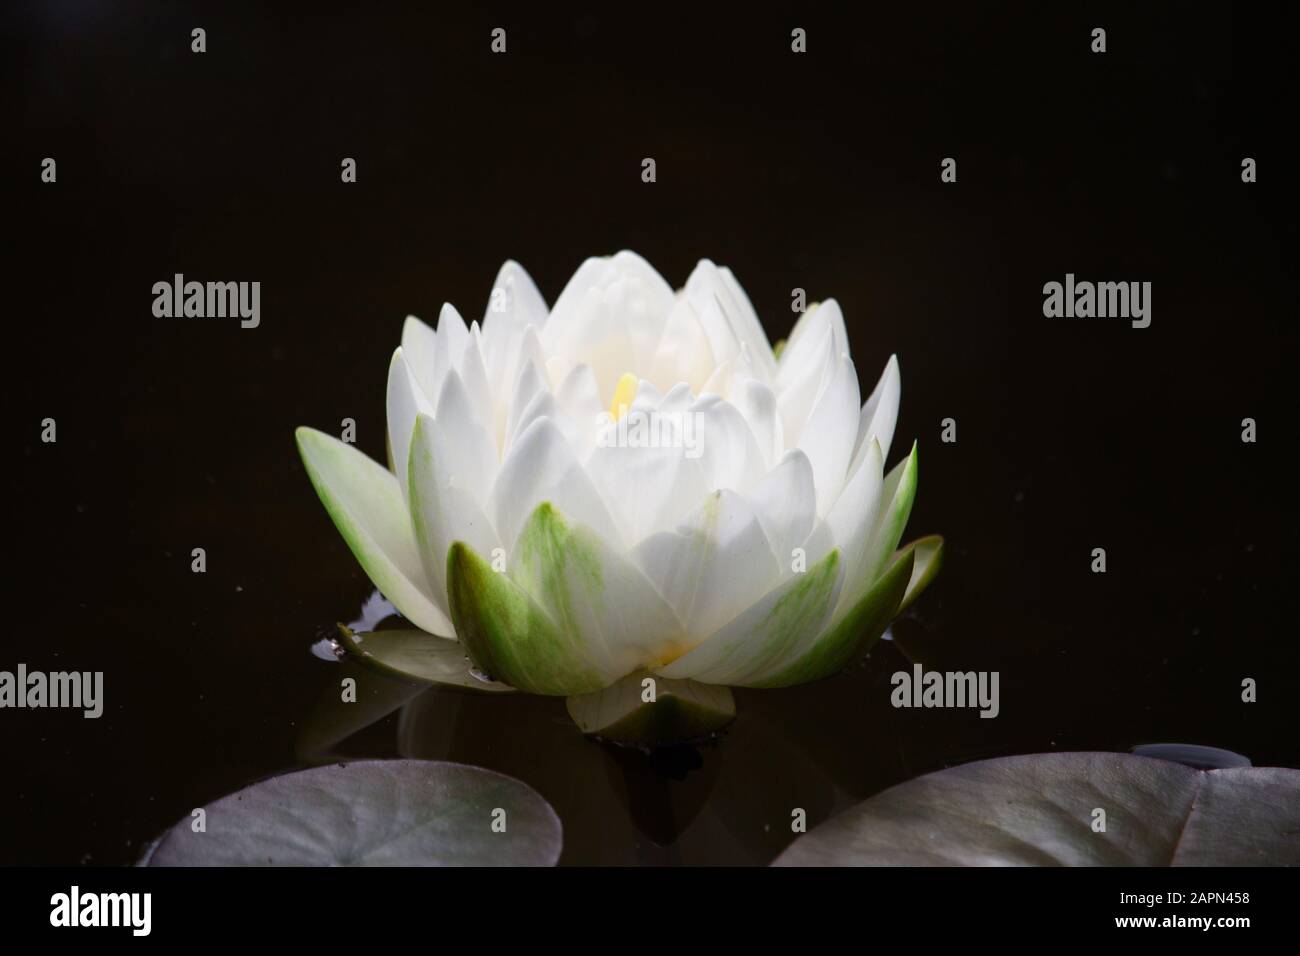 White Water Lily flotando en un estanque con un fondo oscuro y artístico. Nymphaeaceae es una familia de plantas con flores, comúnmente llamadas lirio de agua. Foto de stock